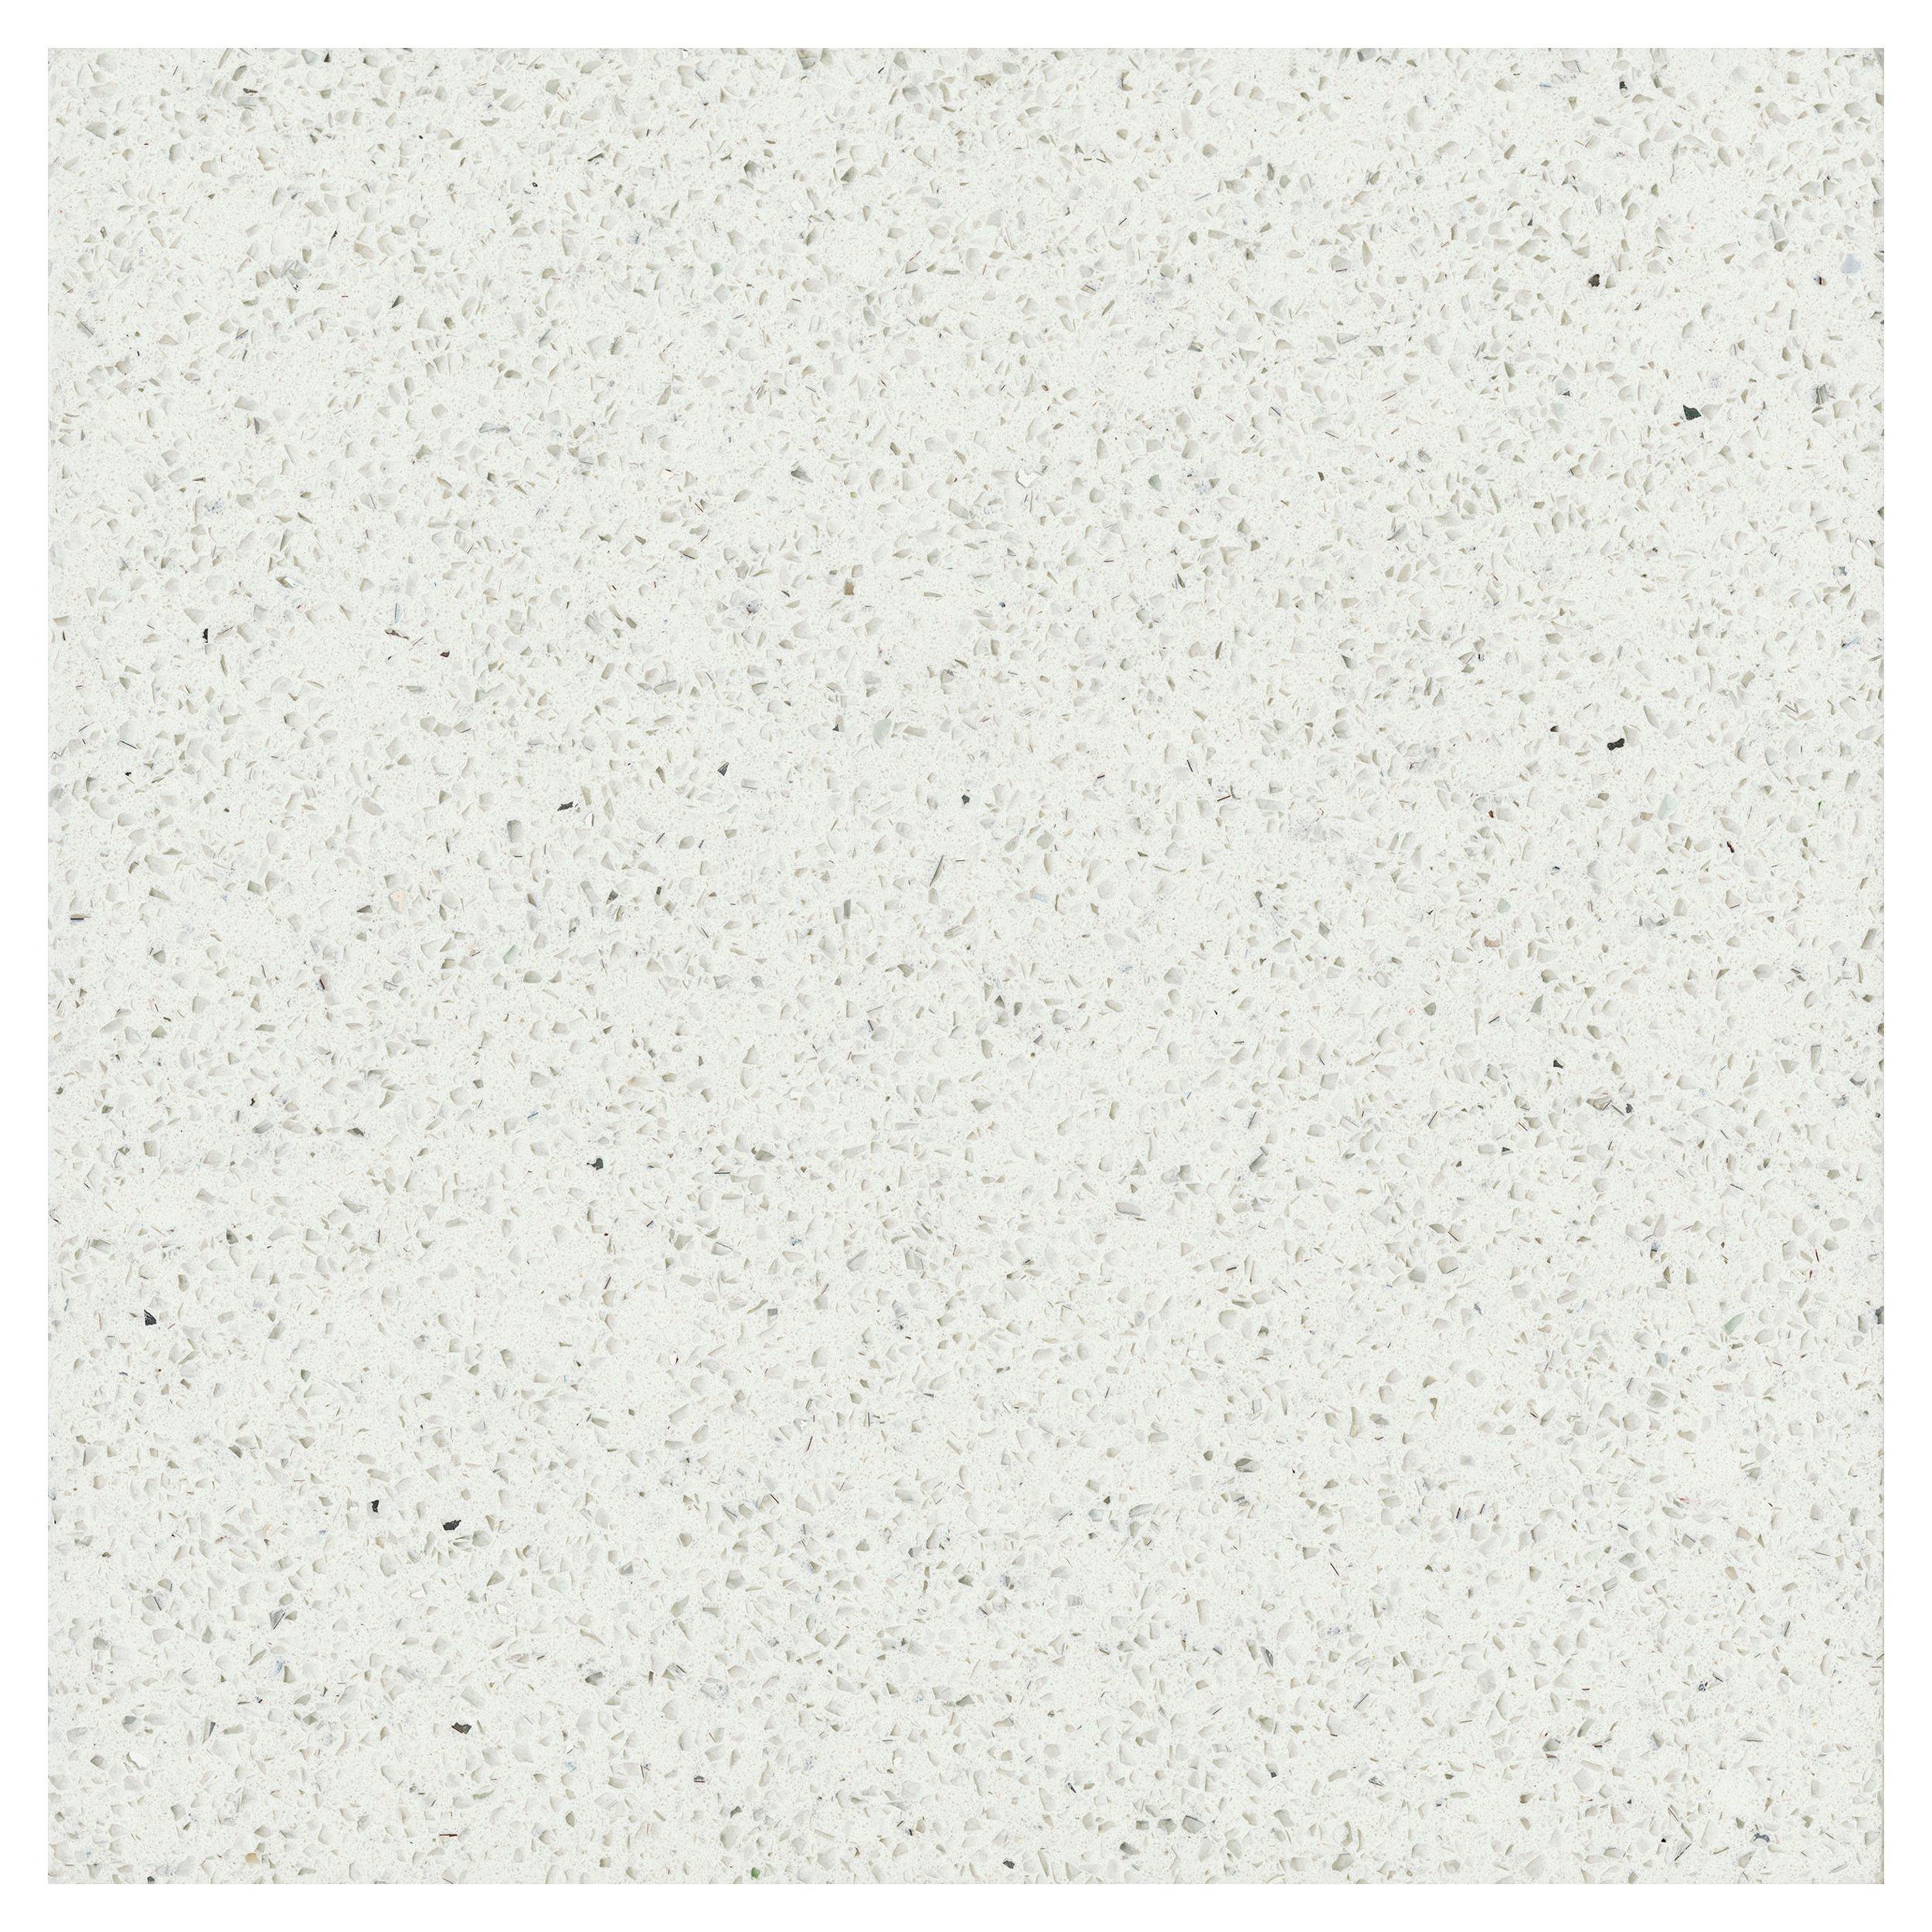 Sample - Specchio White Quartz Custom Countertop | Floor and Decor